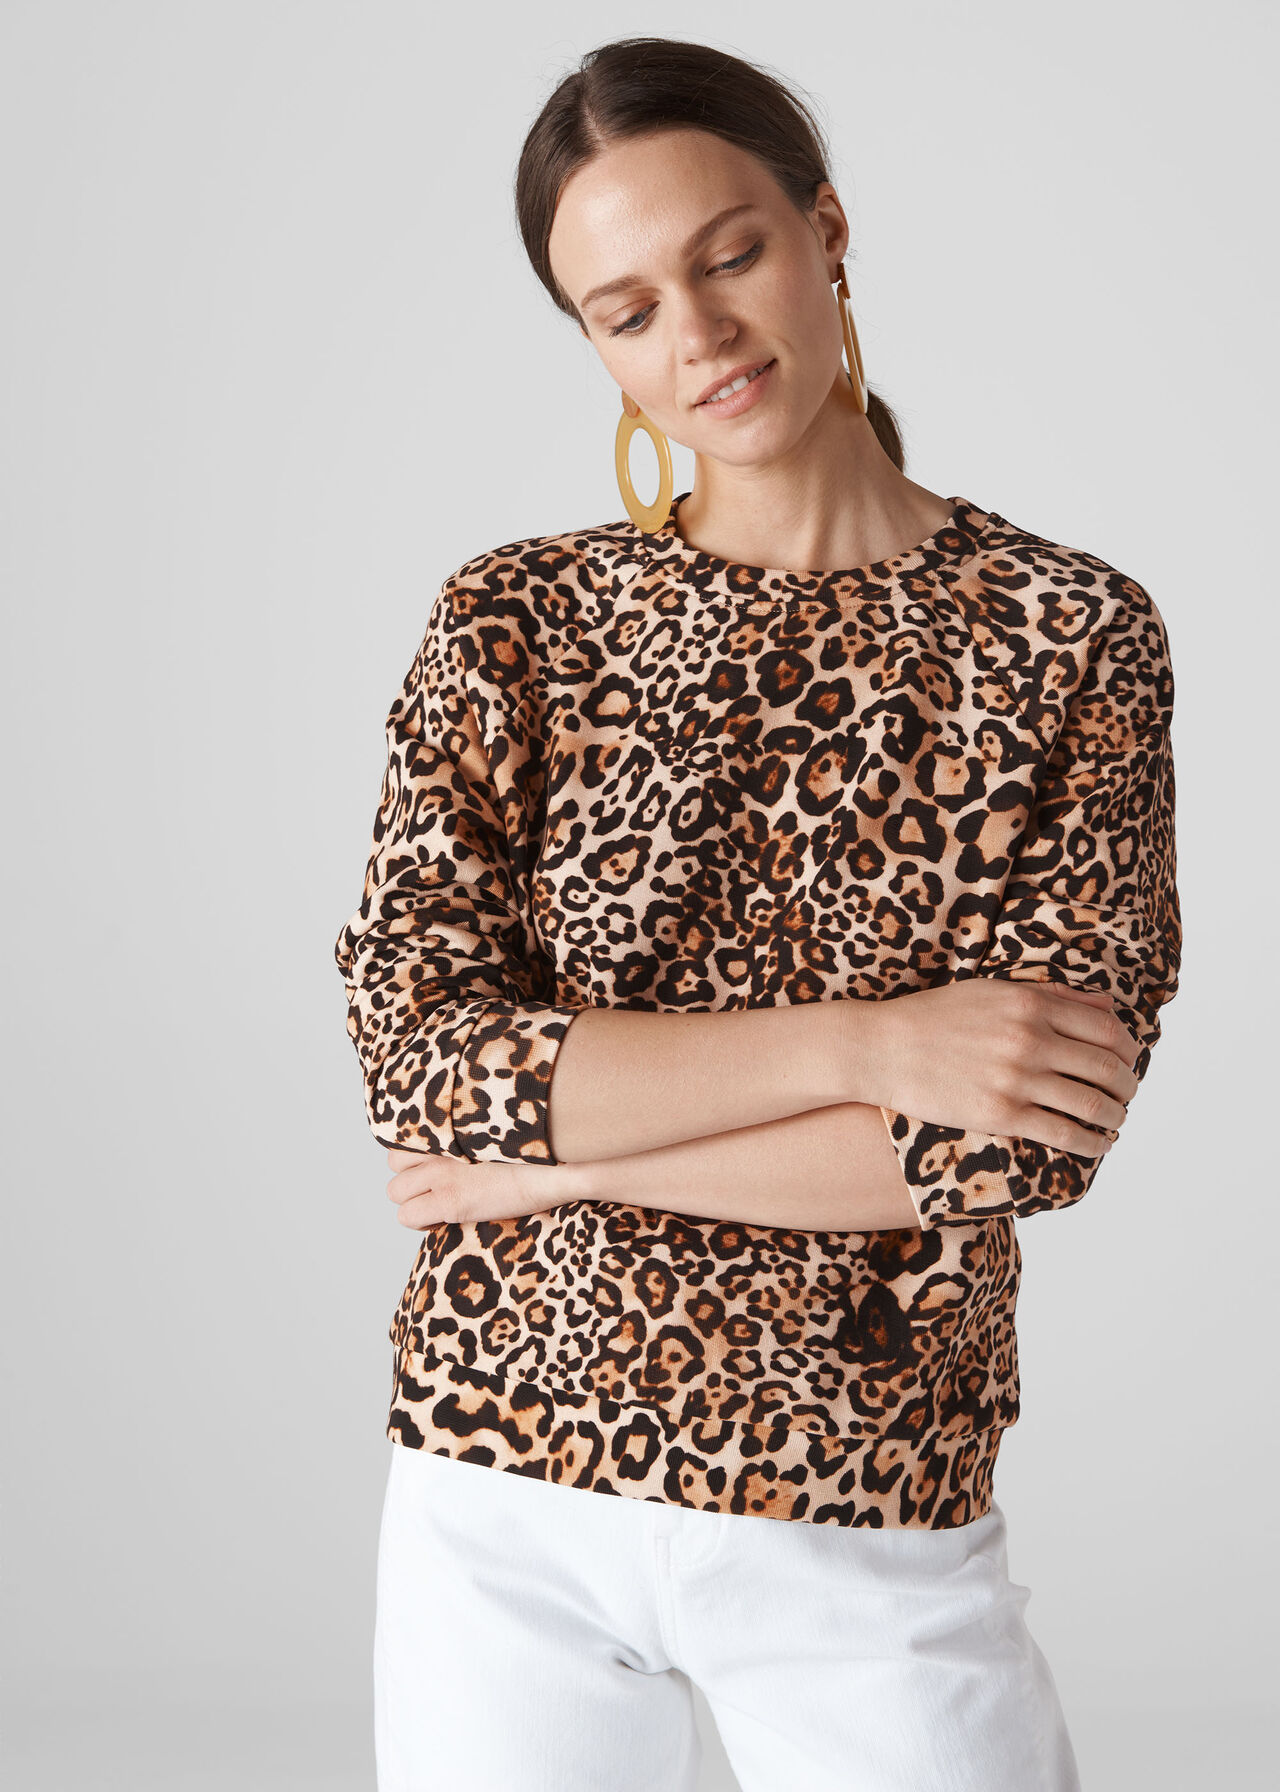 Leopard Print Sweatshirt Leopard Print